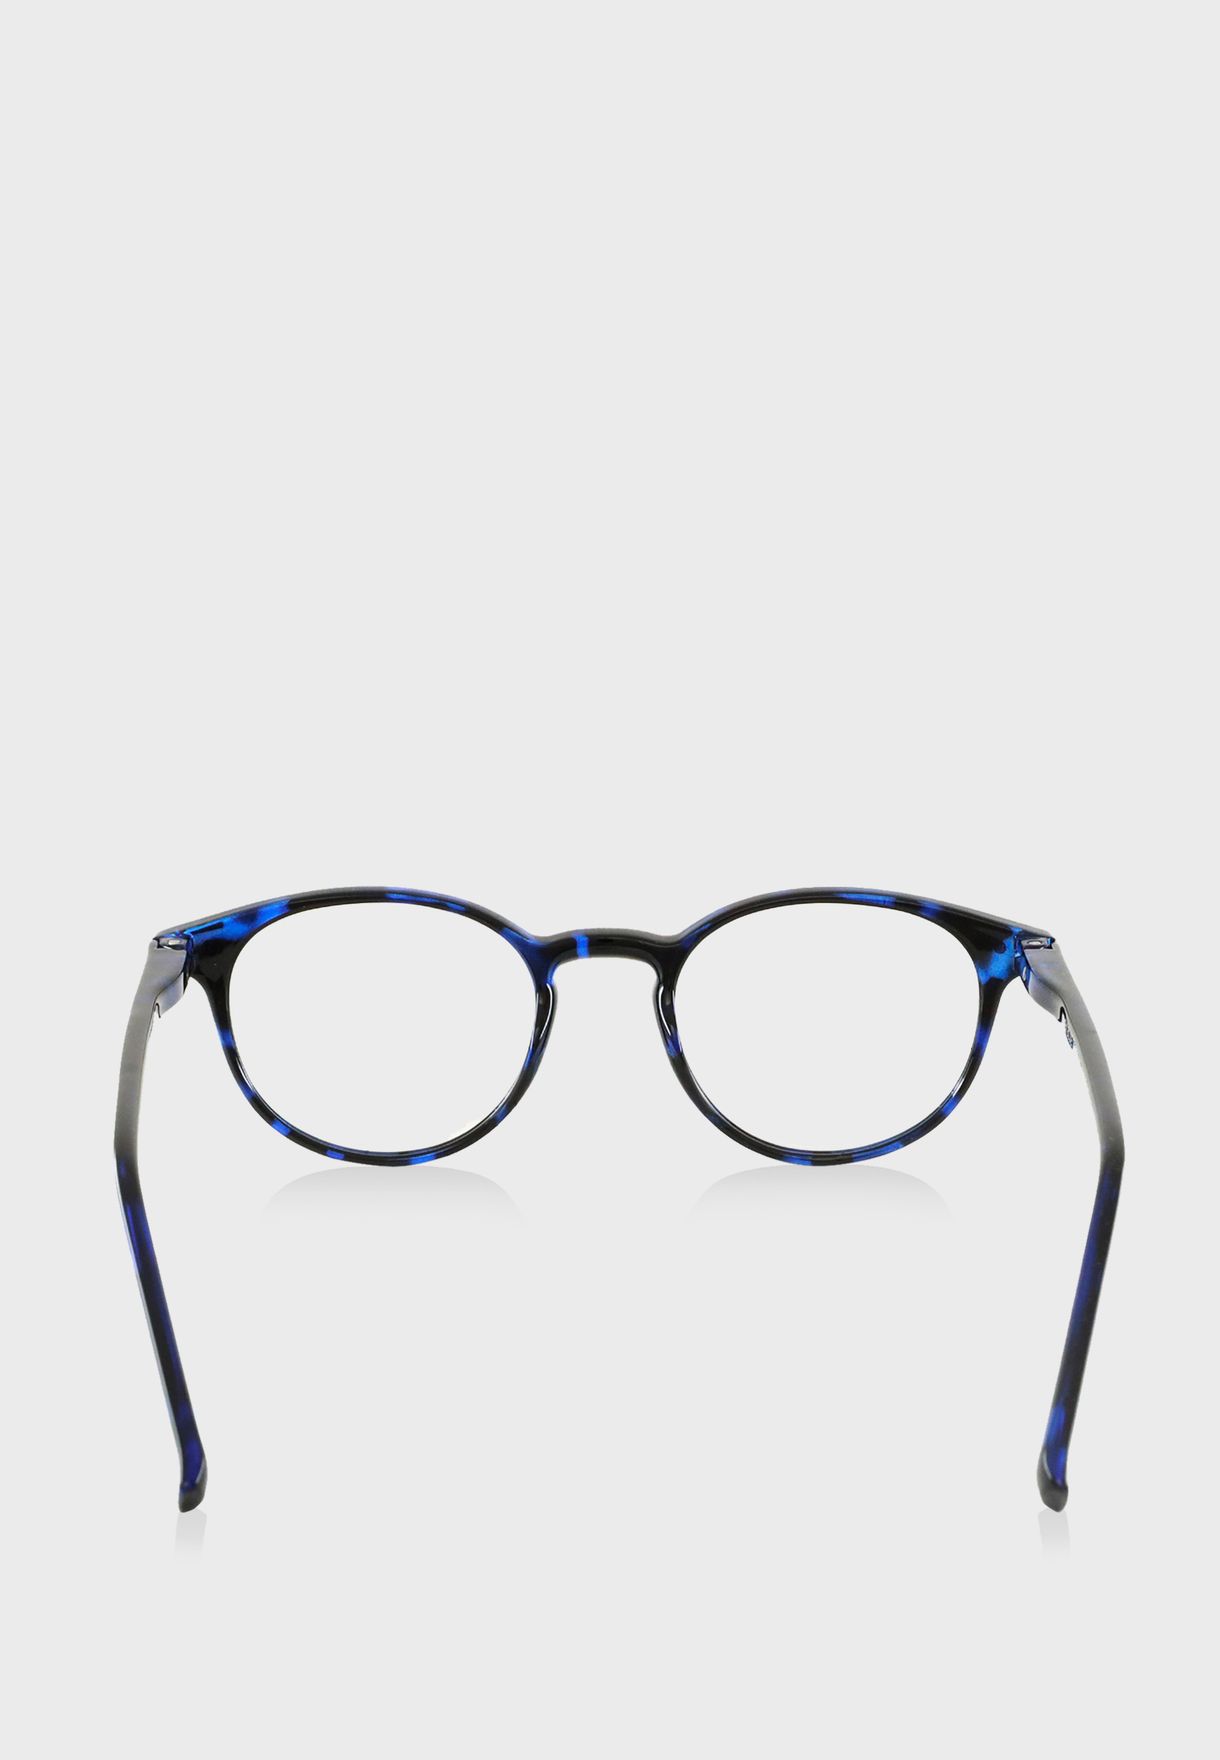 نظارات اليكس للأطفال